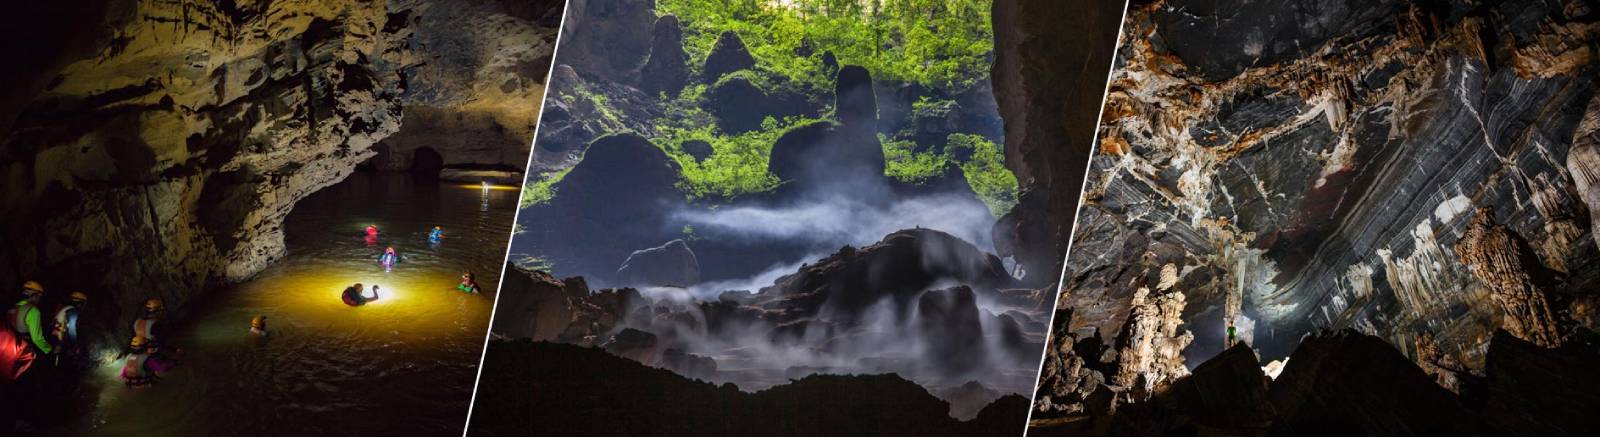 Vietnam Top Caves